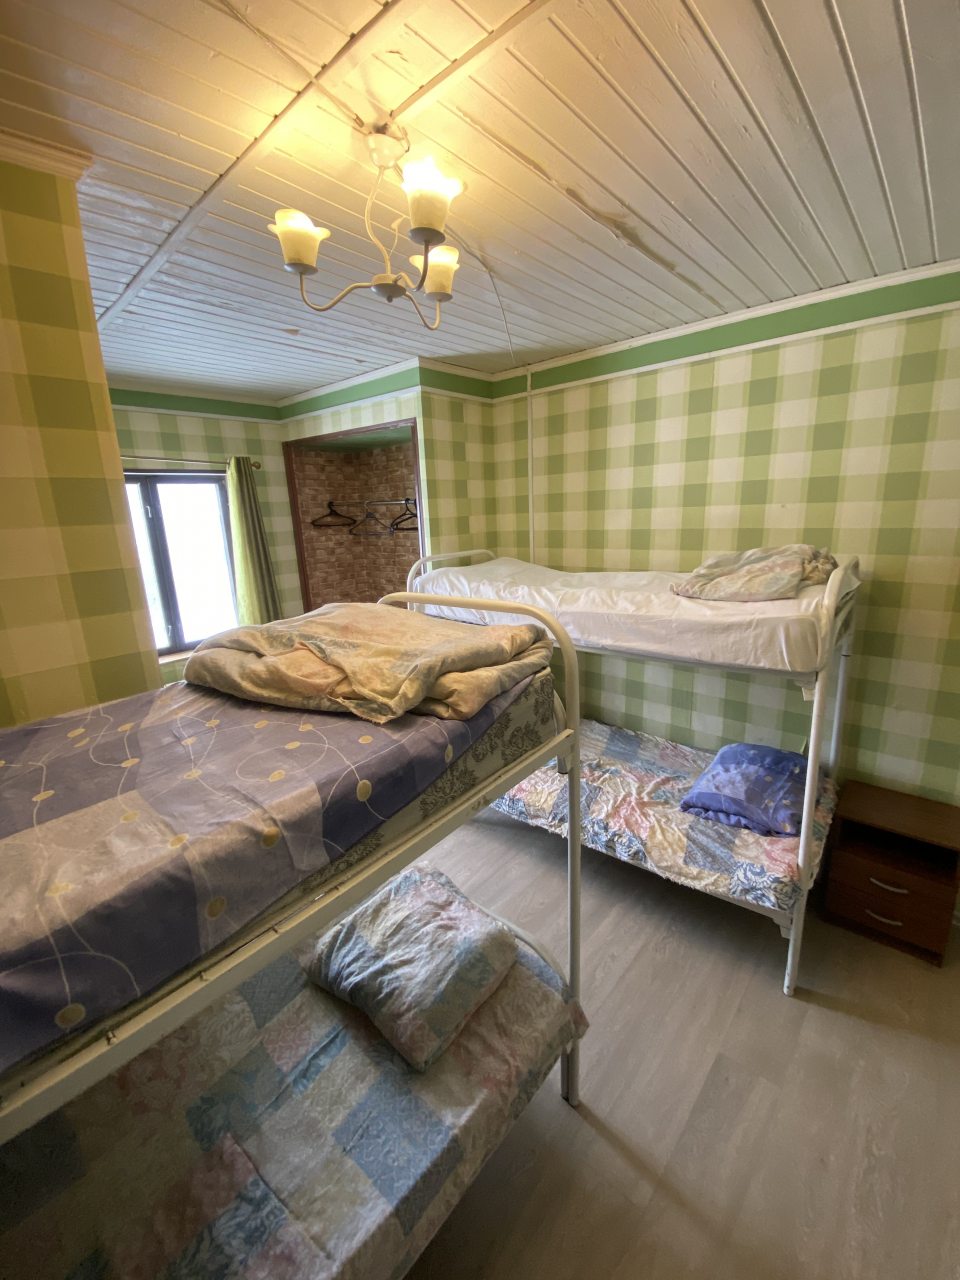 Шестиместный (Койко-место 6-местном номере, Хостел) мотеля Сак, Зеленоград